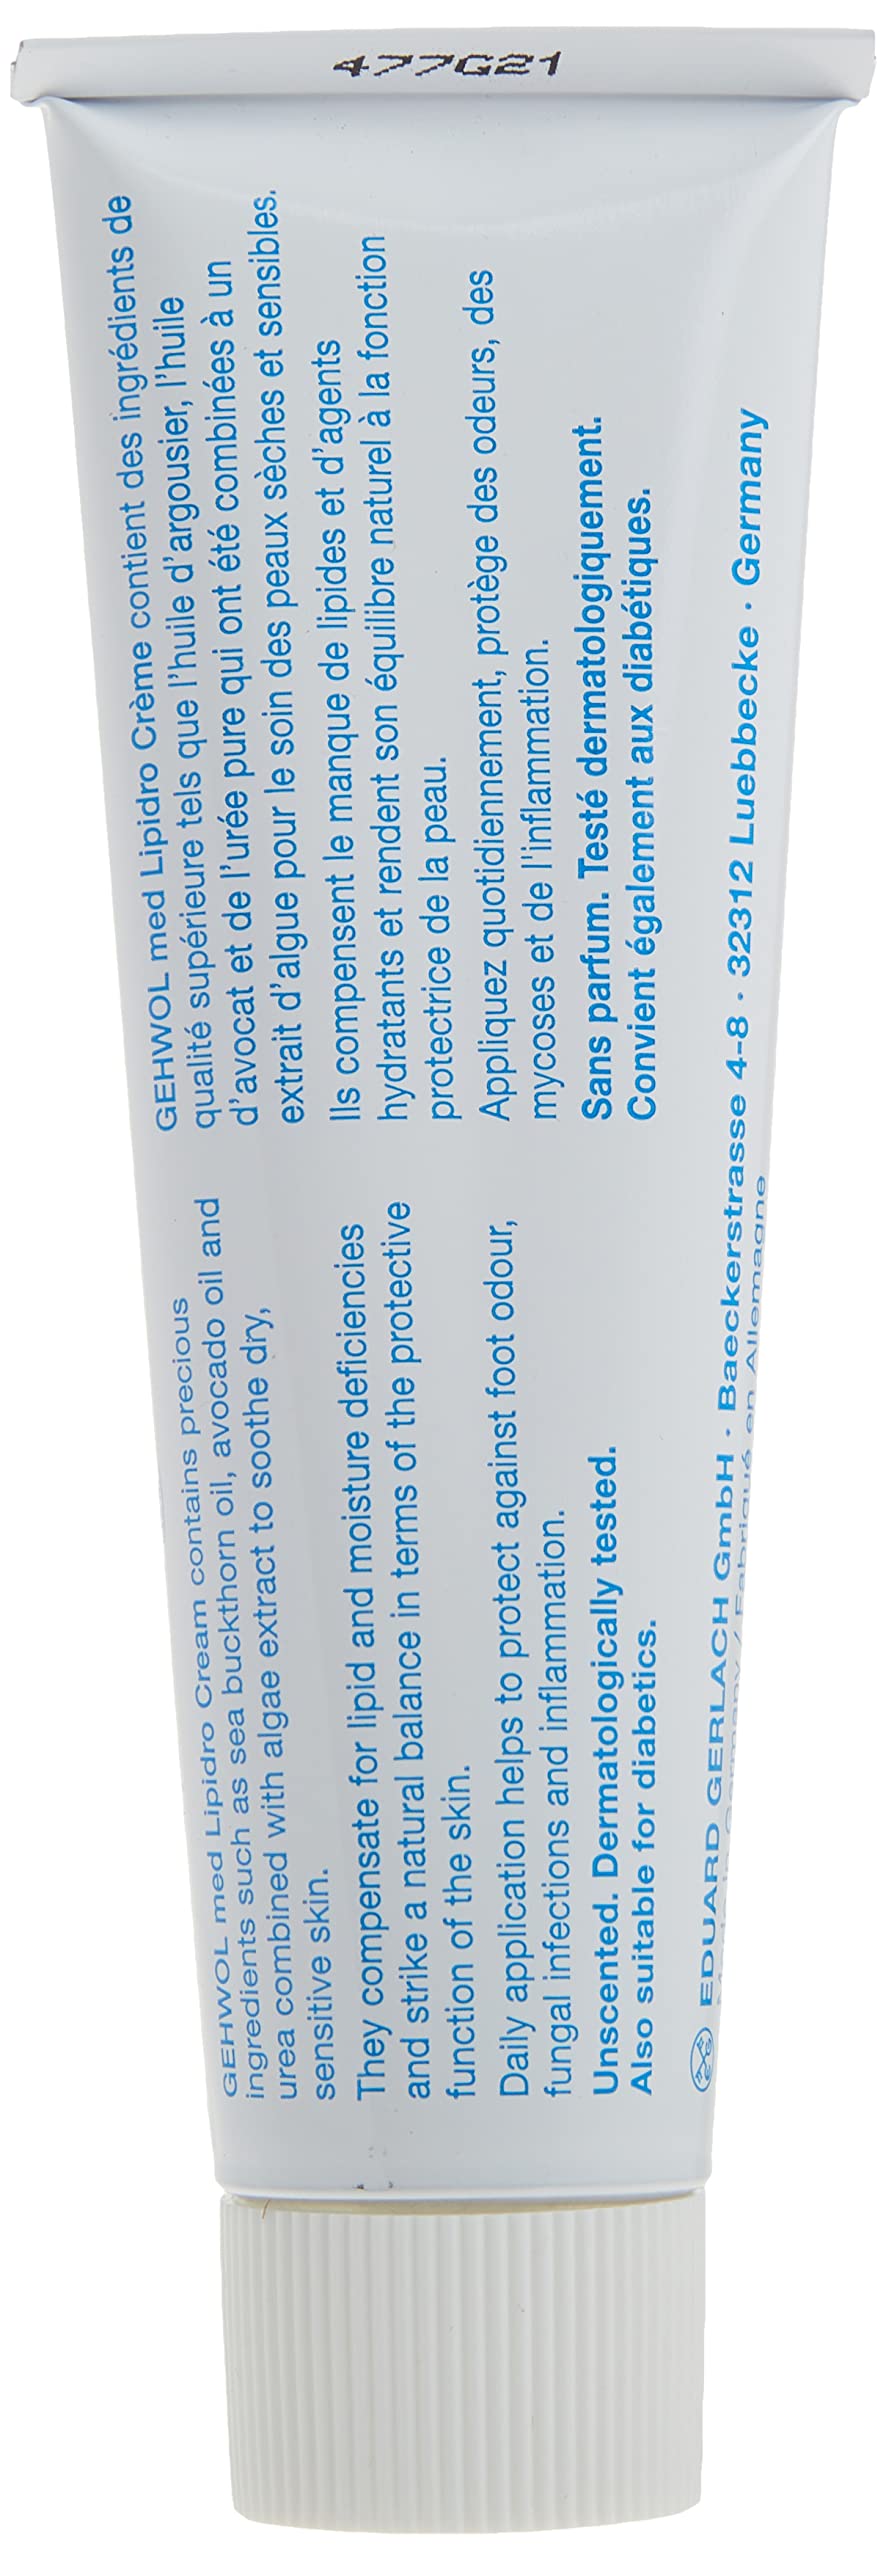 Gehwol Med Lipidro Cream for Unisex, 2.6 Fl Oz (Pack of 1)